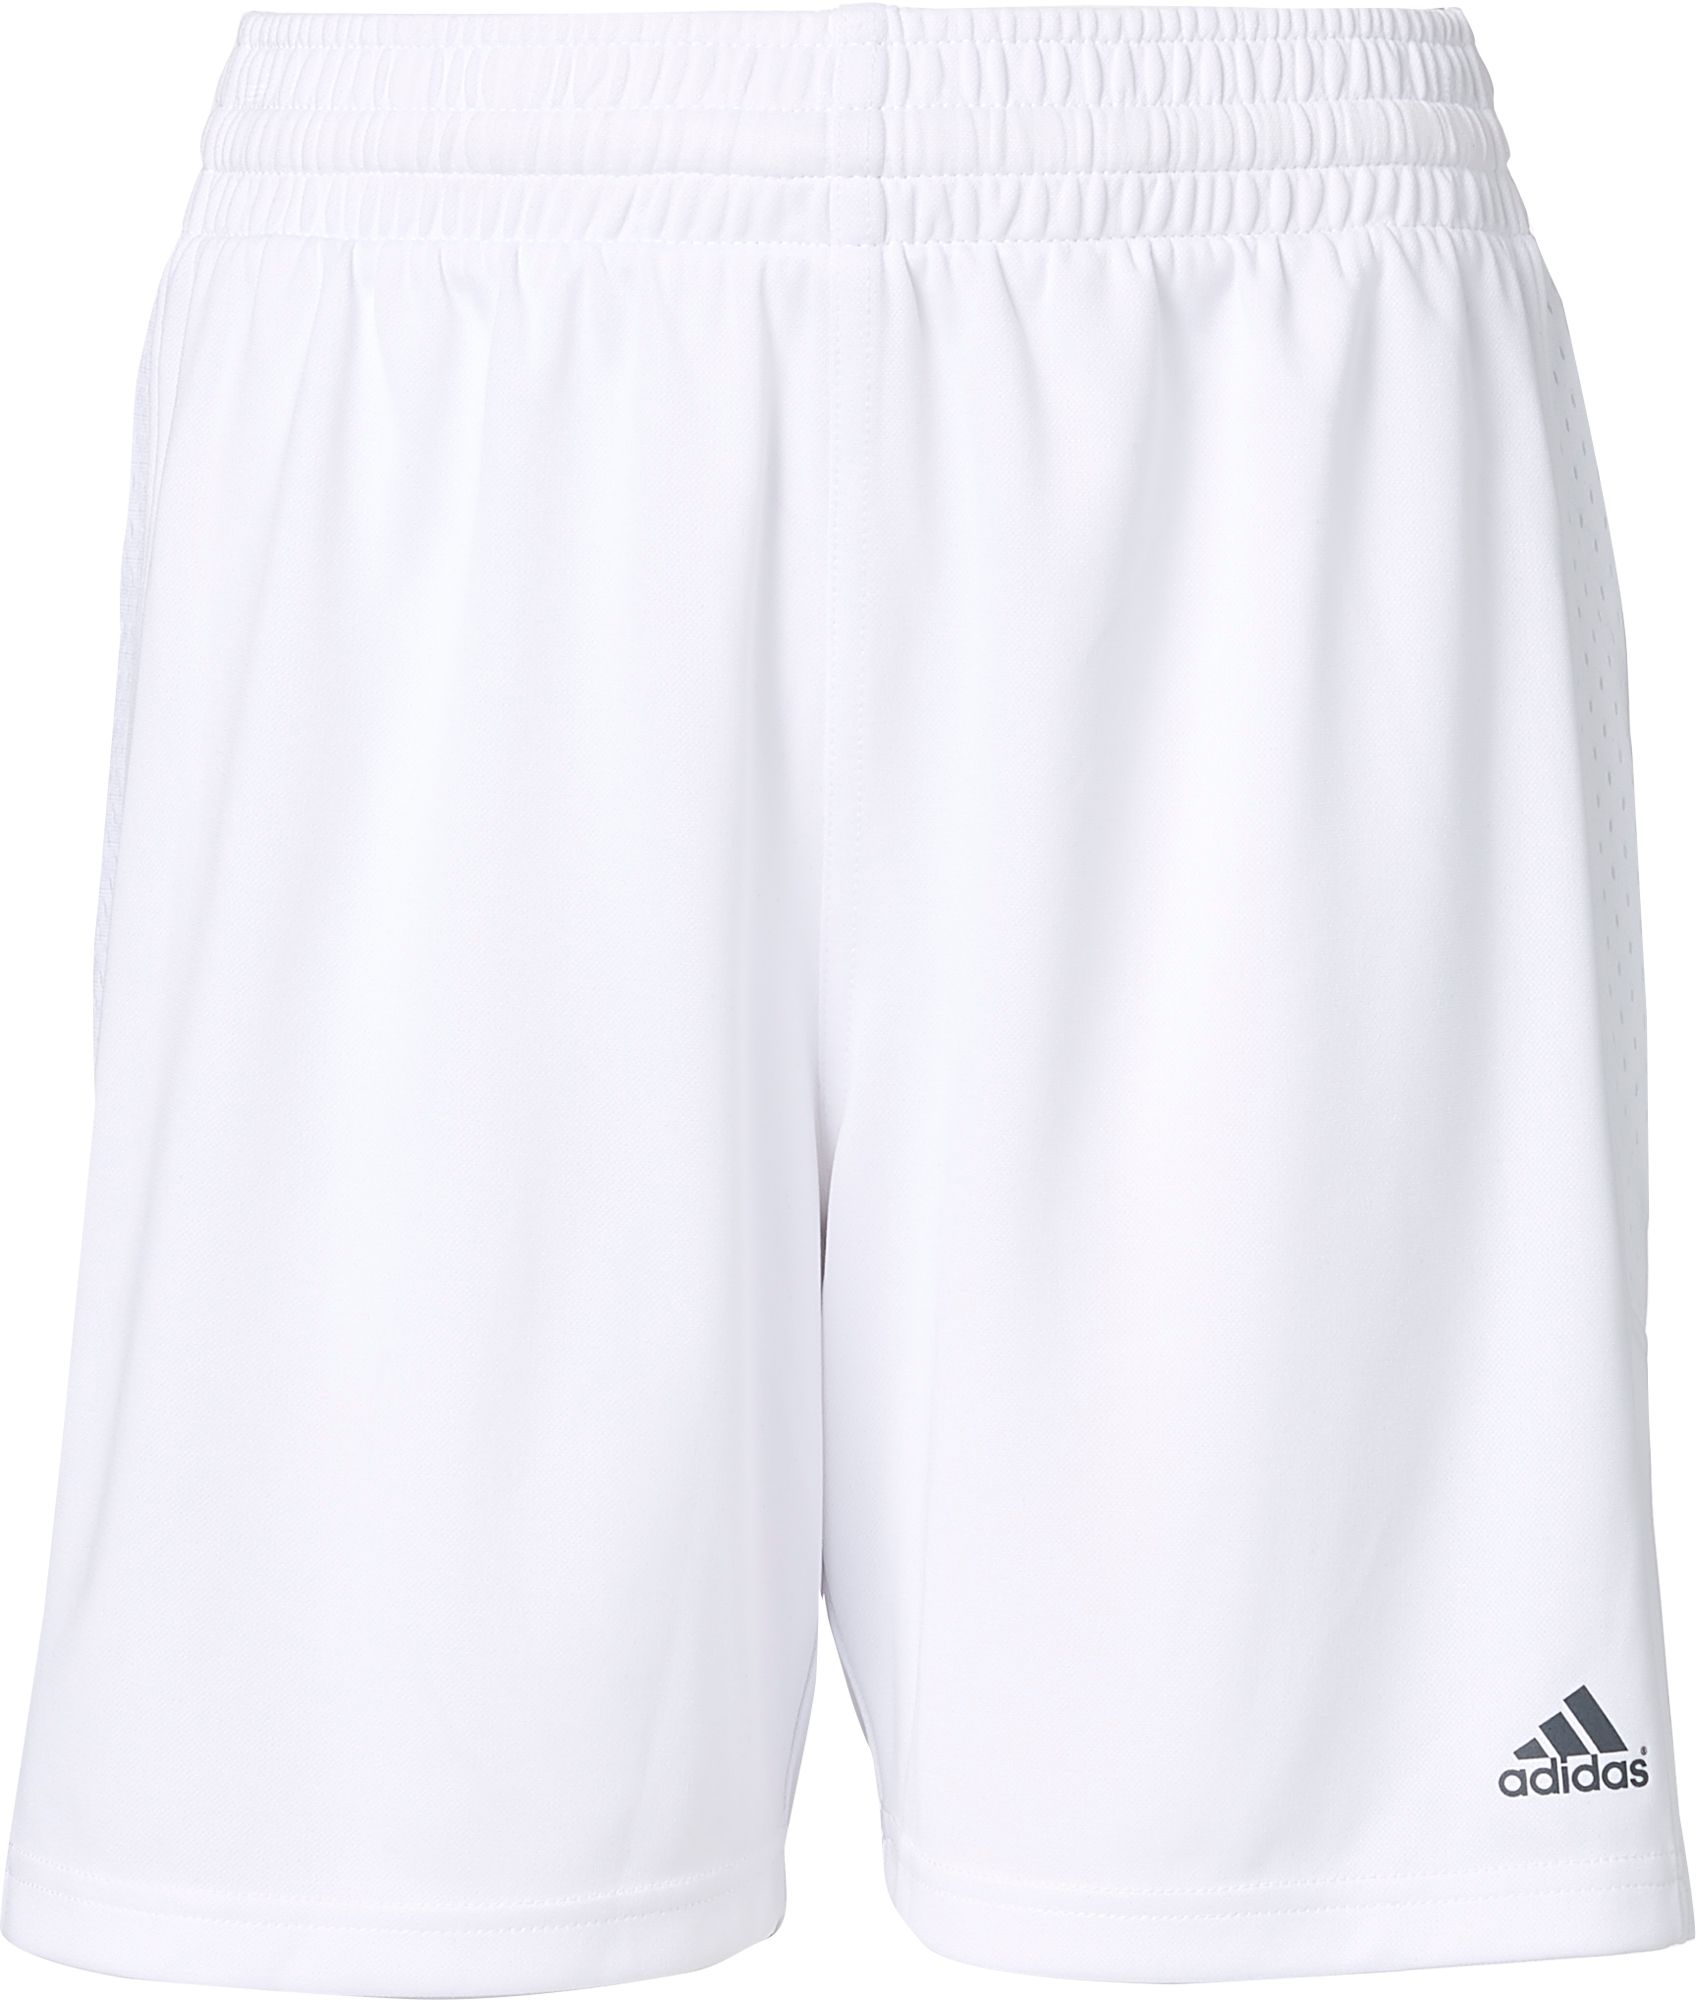 adidas football shorts